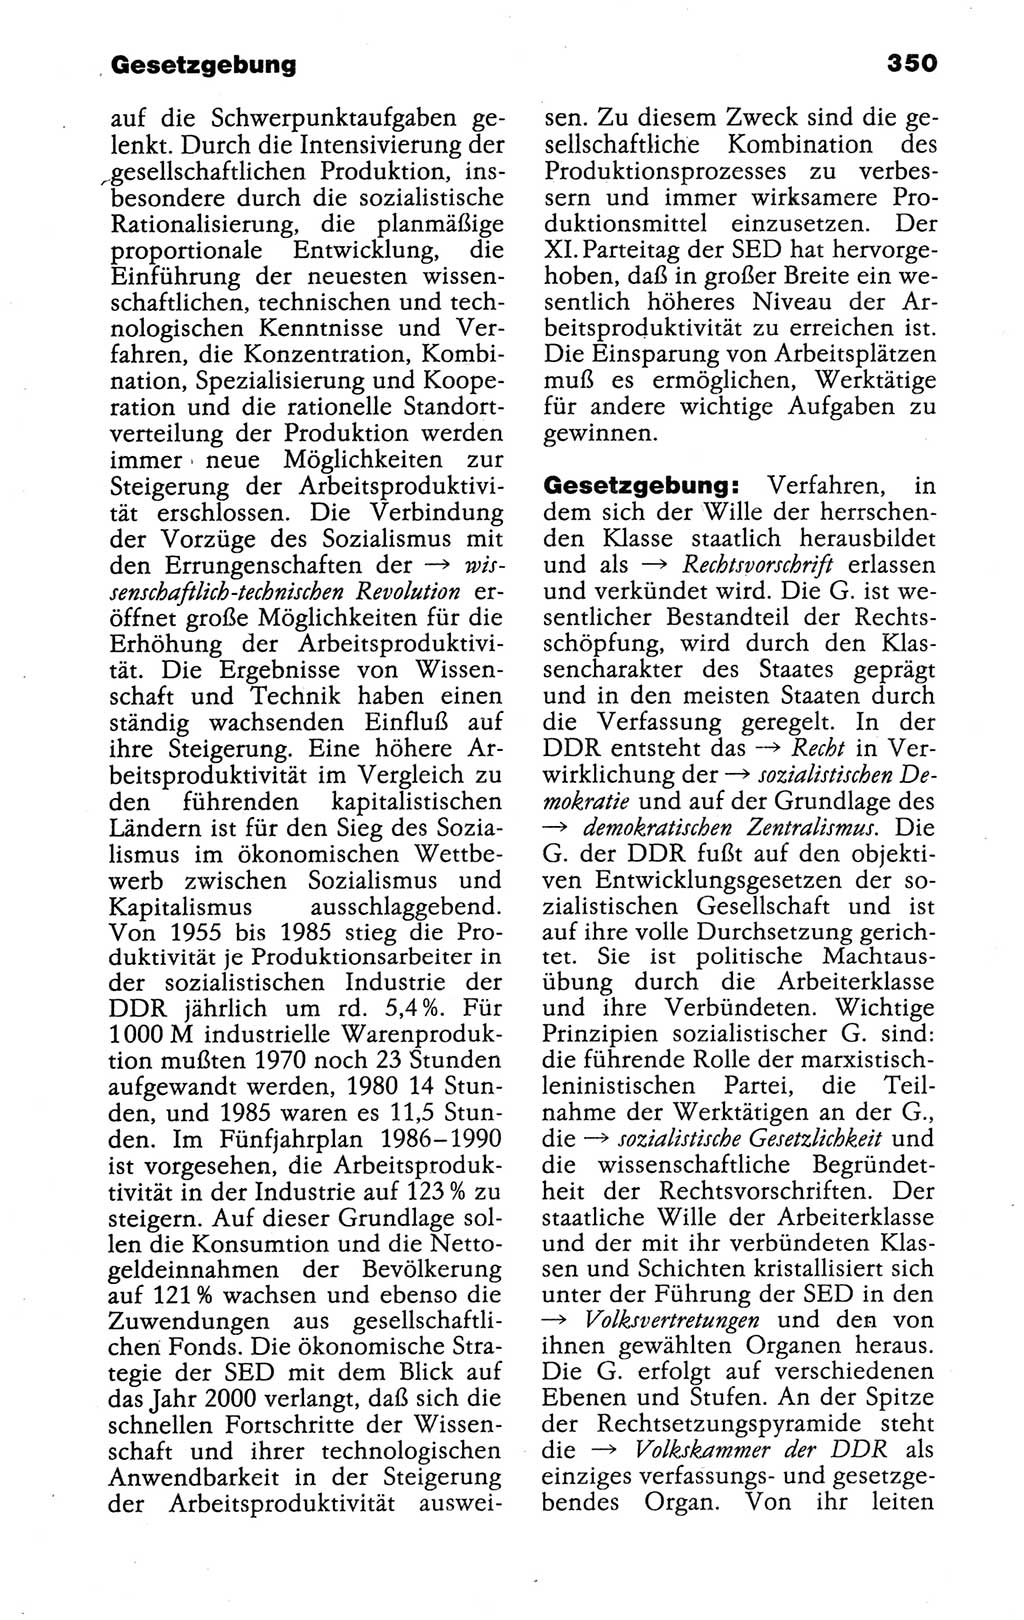 Kleines politisches Wörterbuch [Deutsche Demokratische Republik (DDR)] 1988, Seite 350 (Kl. pol. Wb. DDR 1988, S. 350)